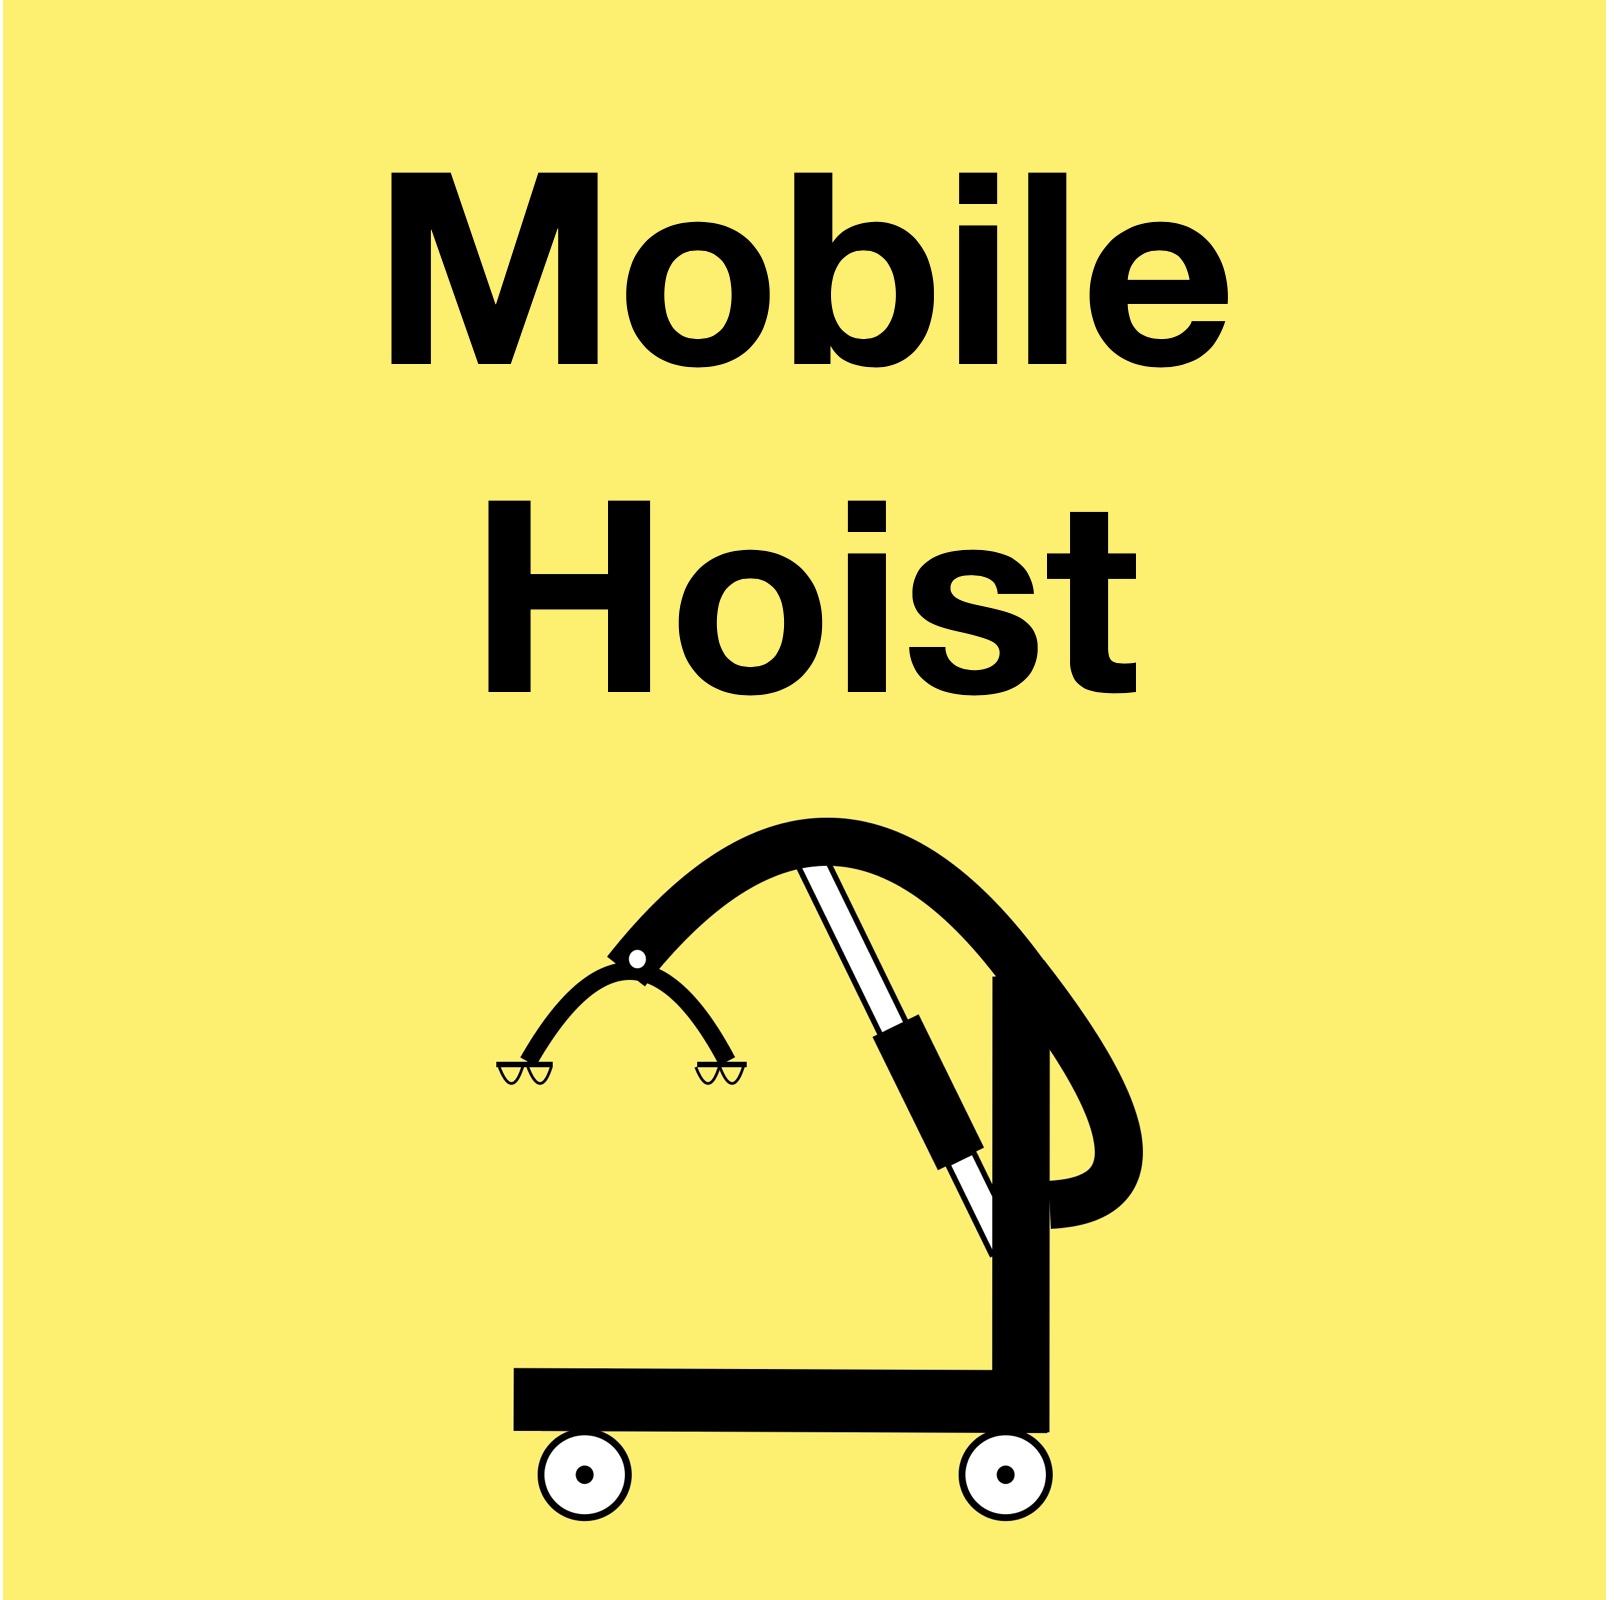 Mobile Hoist